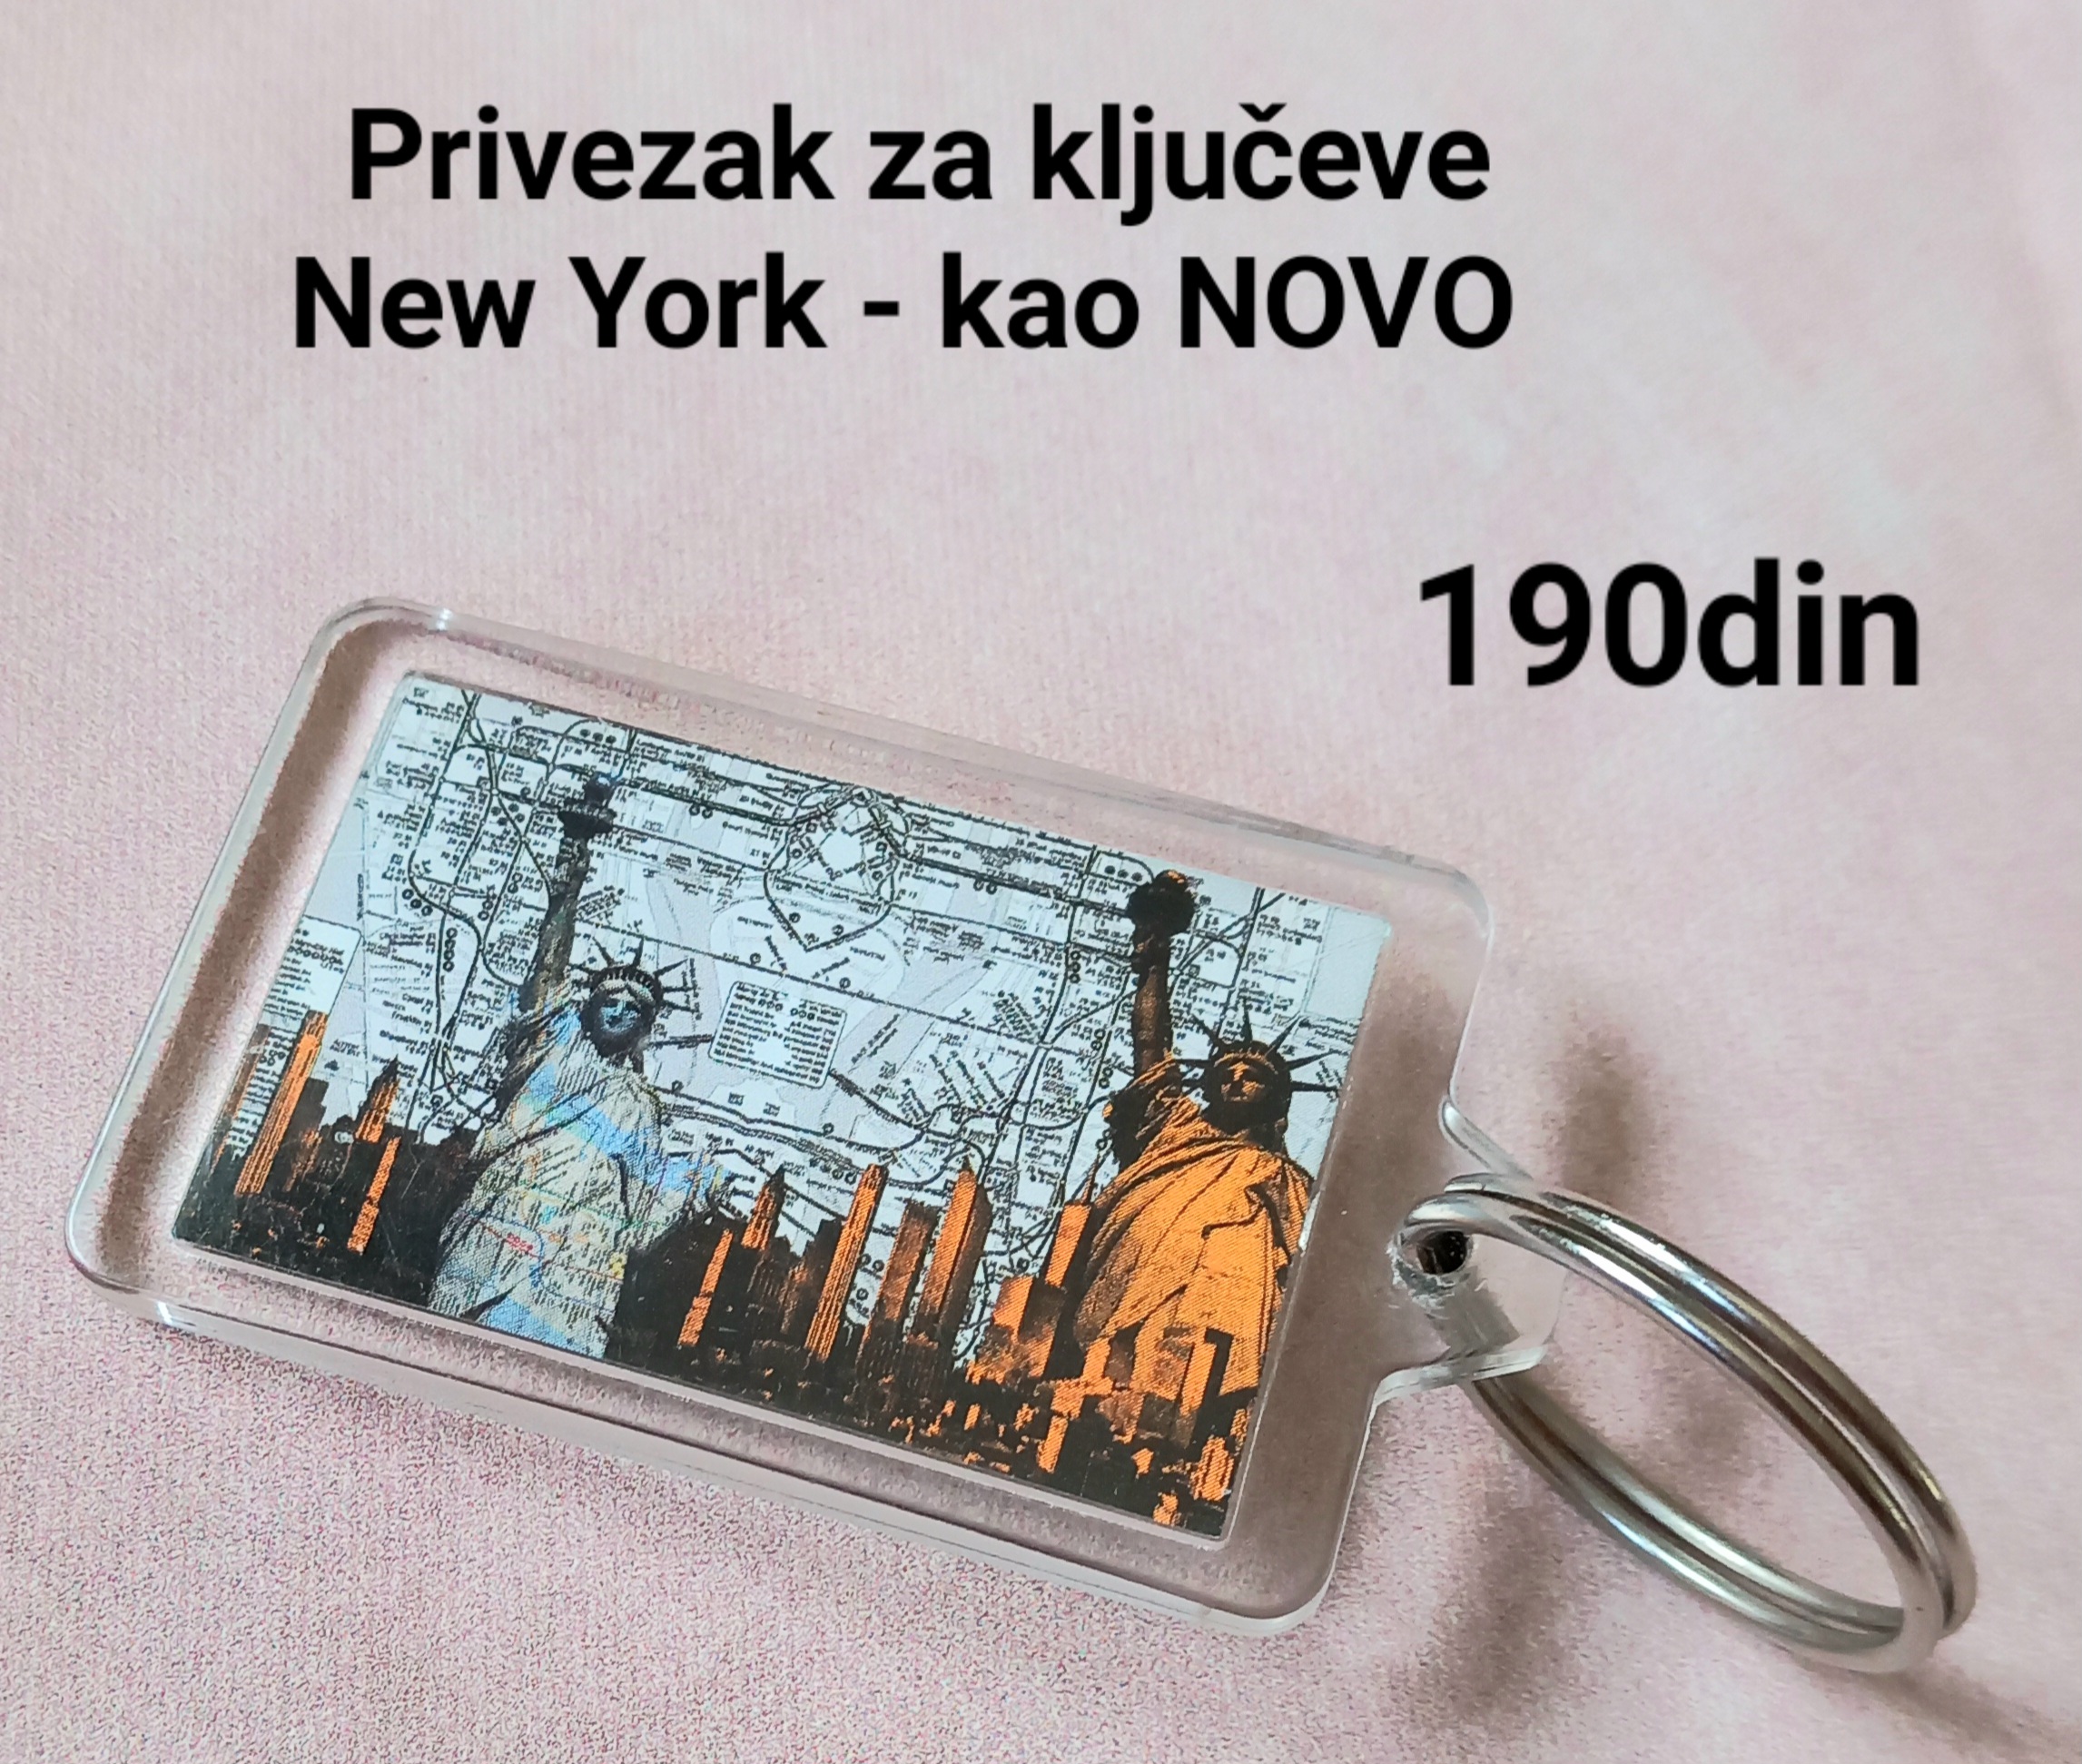 Privezak za ključeve New York - kao NOVO